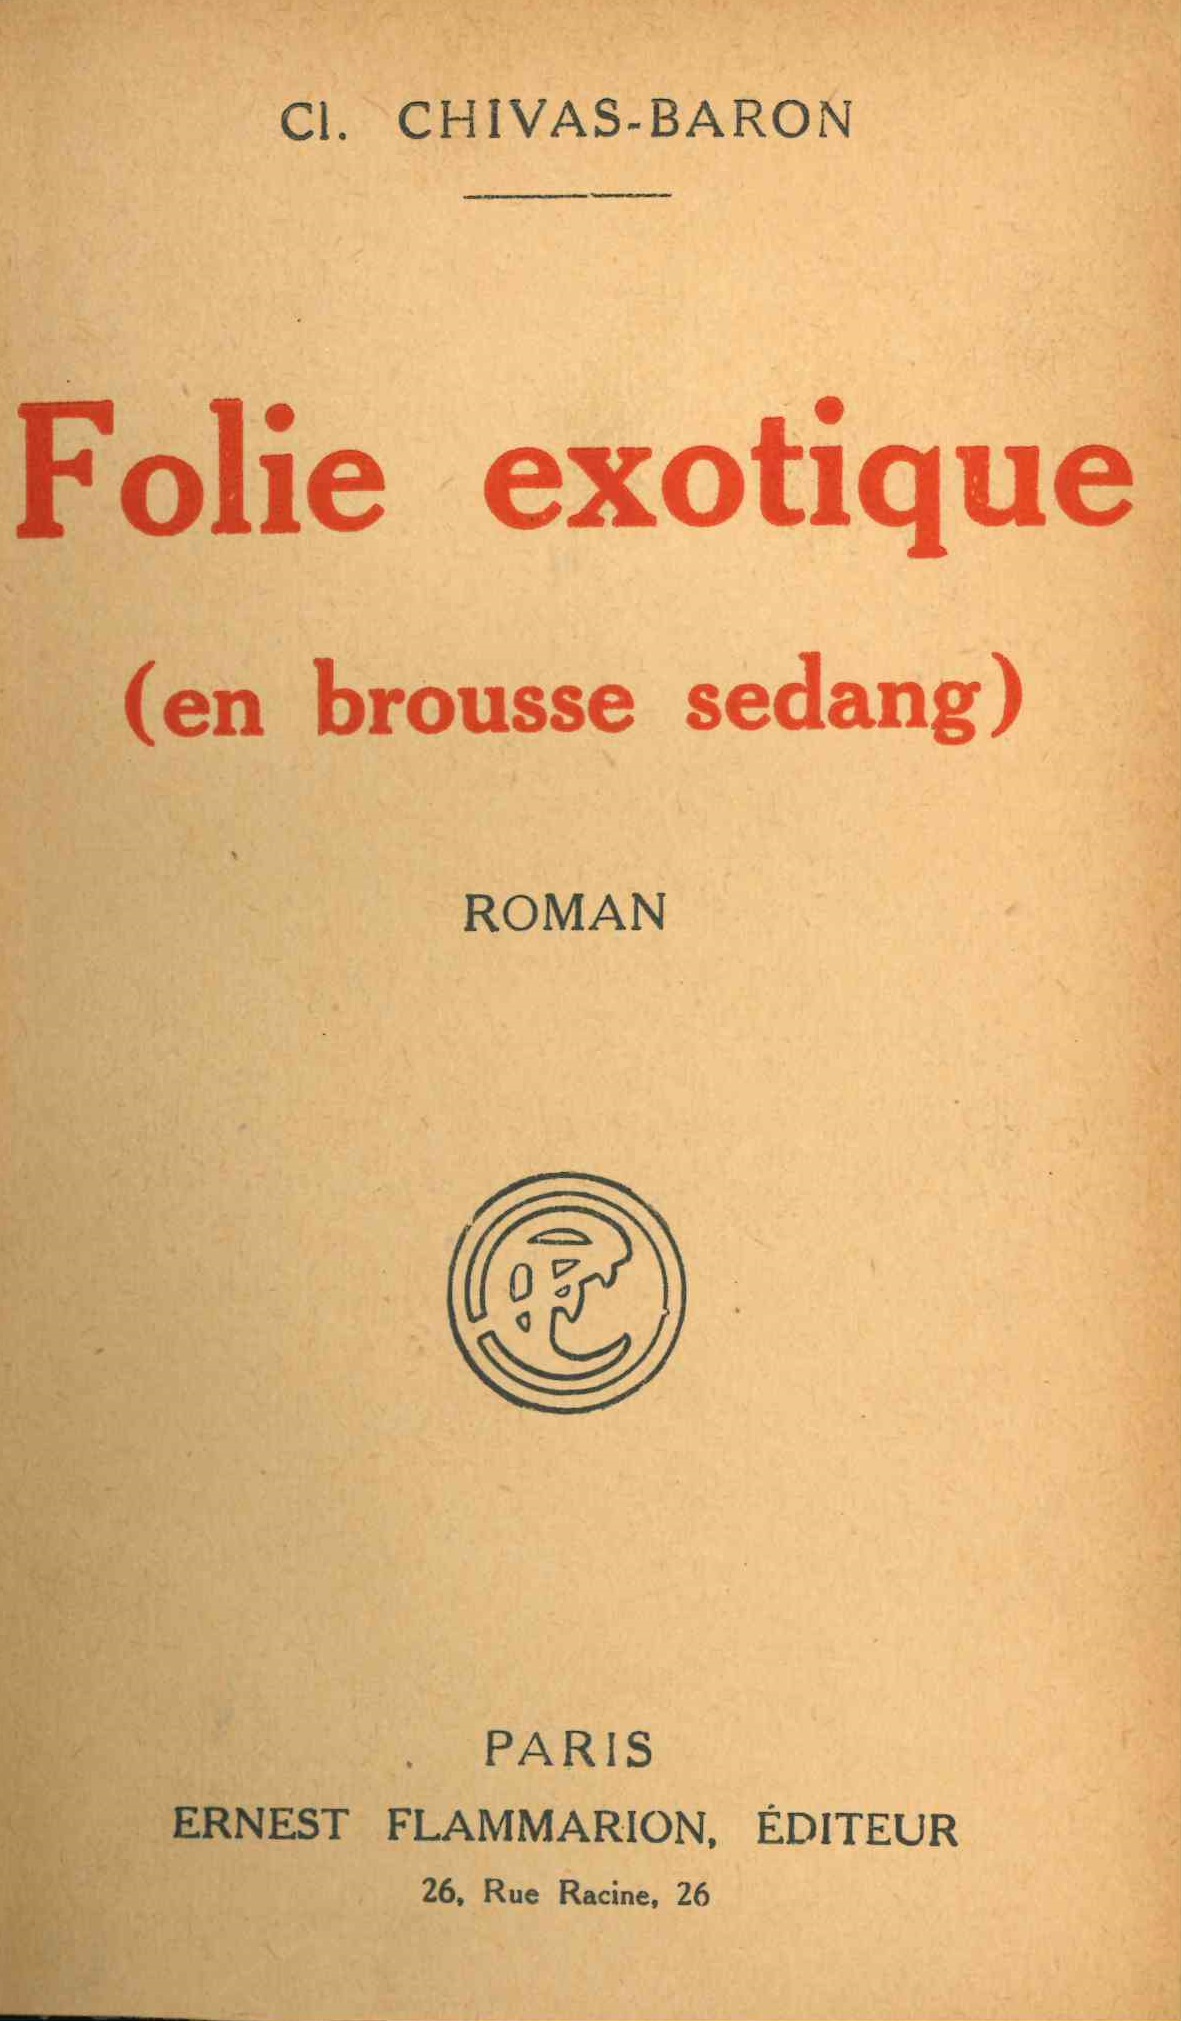 Chivas-Baron (Clotilde), Folie exotique en brousse sedang, Paris, Flammarion, 1934